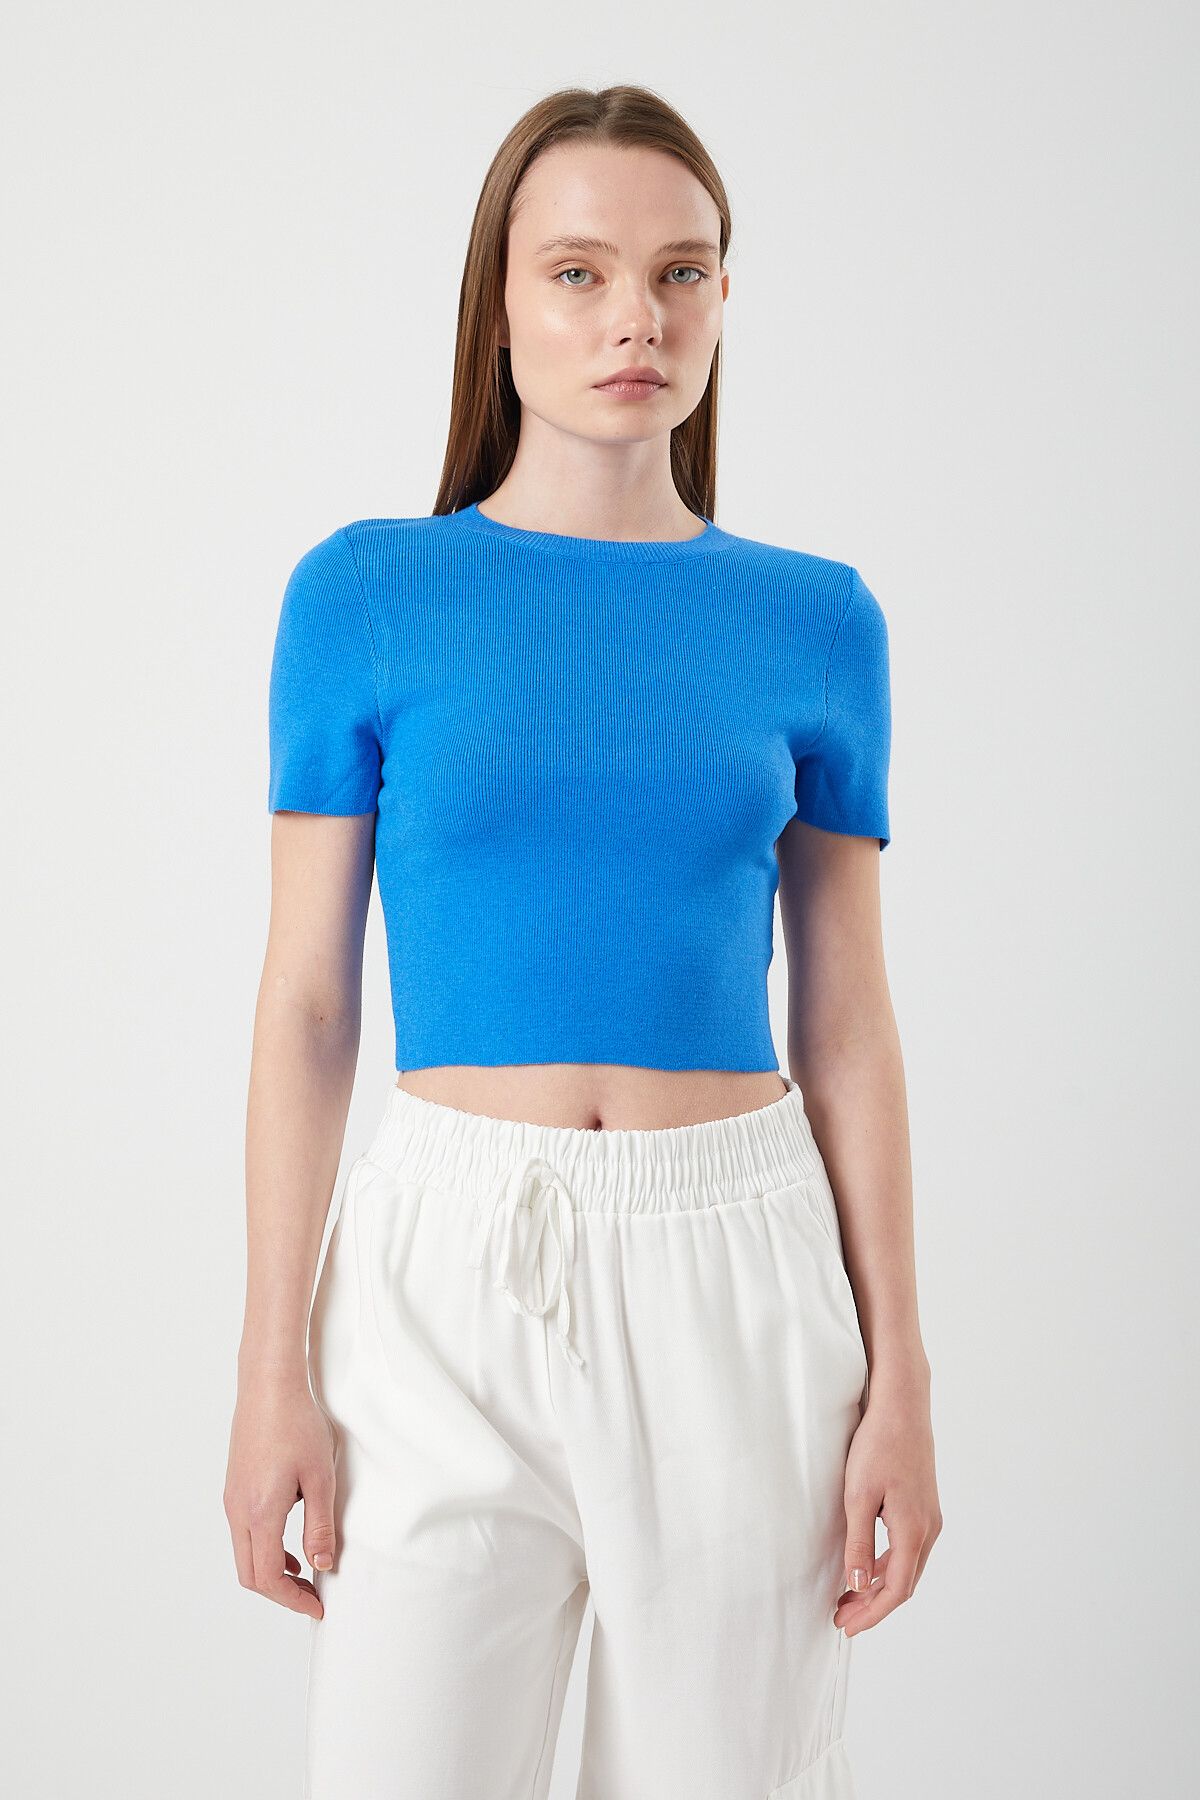 Mixray 6725 Kadın Mavi Yumuşak Dokulu Yazlık Triko T-Shirt